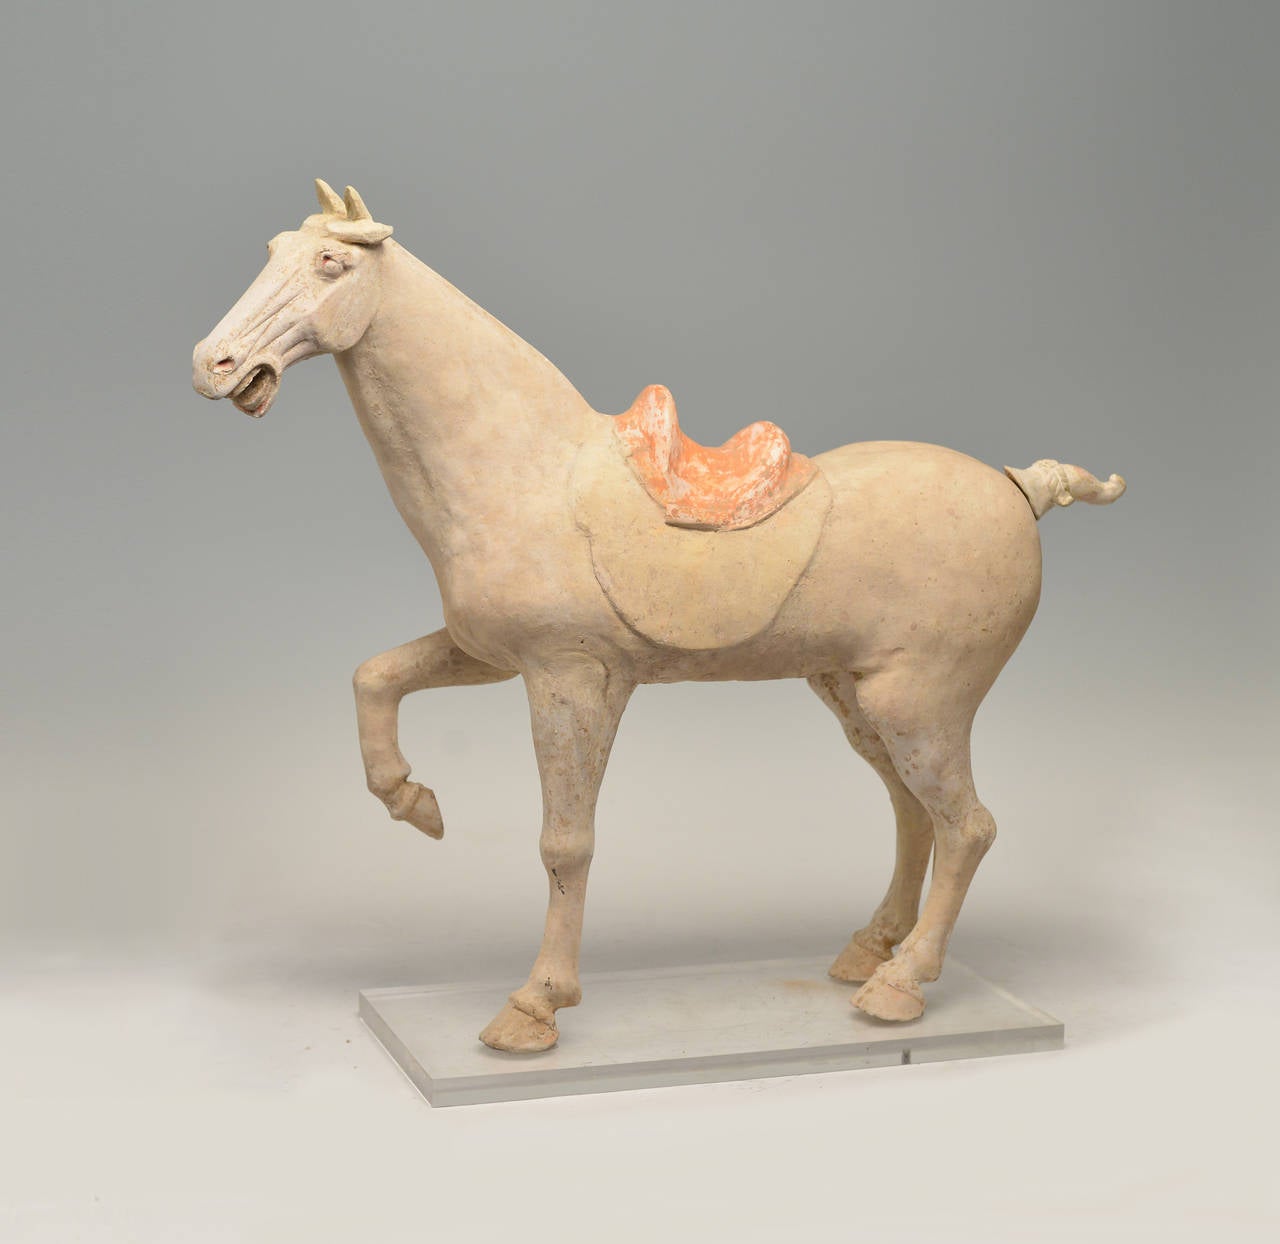 Figure en poterie peinte représentant un cheval cabré, la jambe droite levée et la tête tournée vers la gauche, la tête bien modelée avec des traits nets sous les oreilles dressées, la selle peinte d'un motif cruciforme, VIIIe siècle.